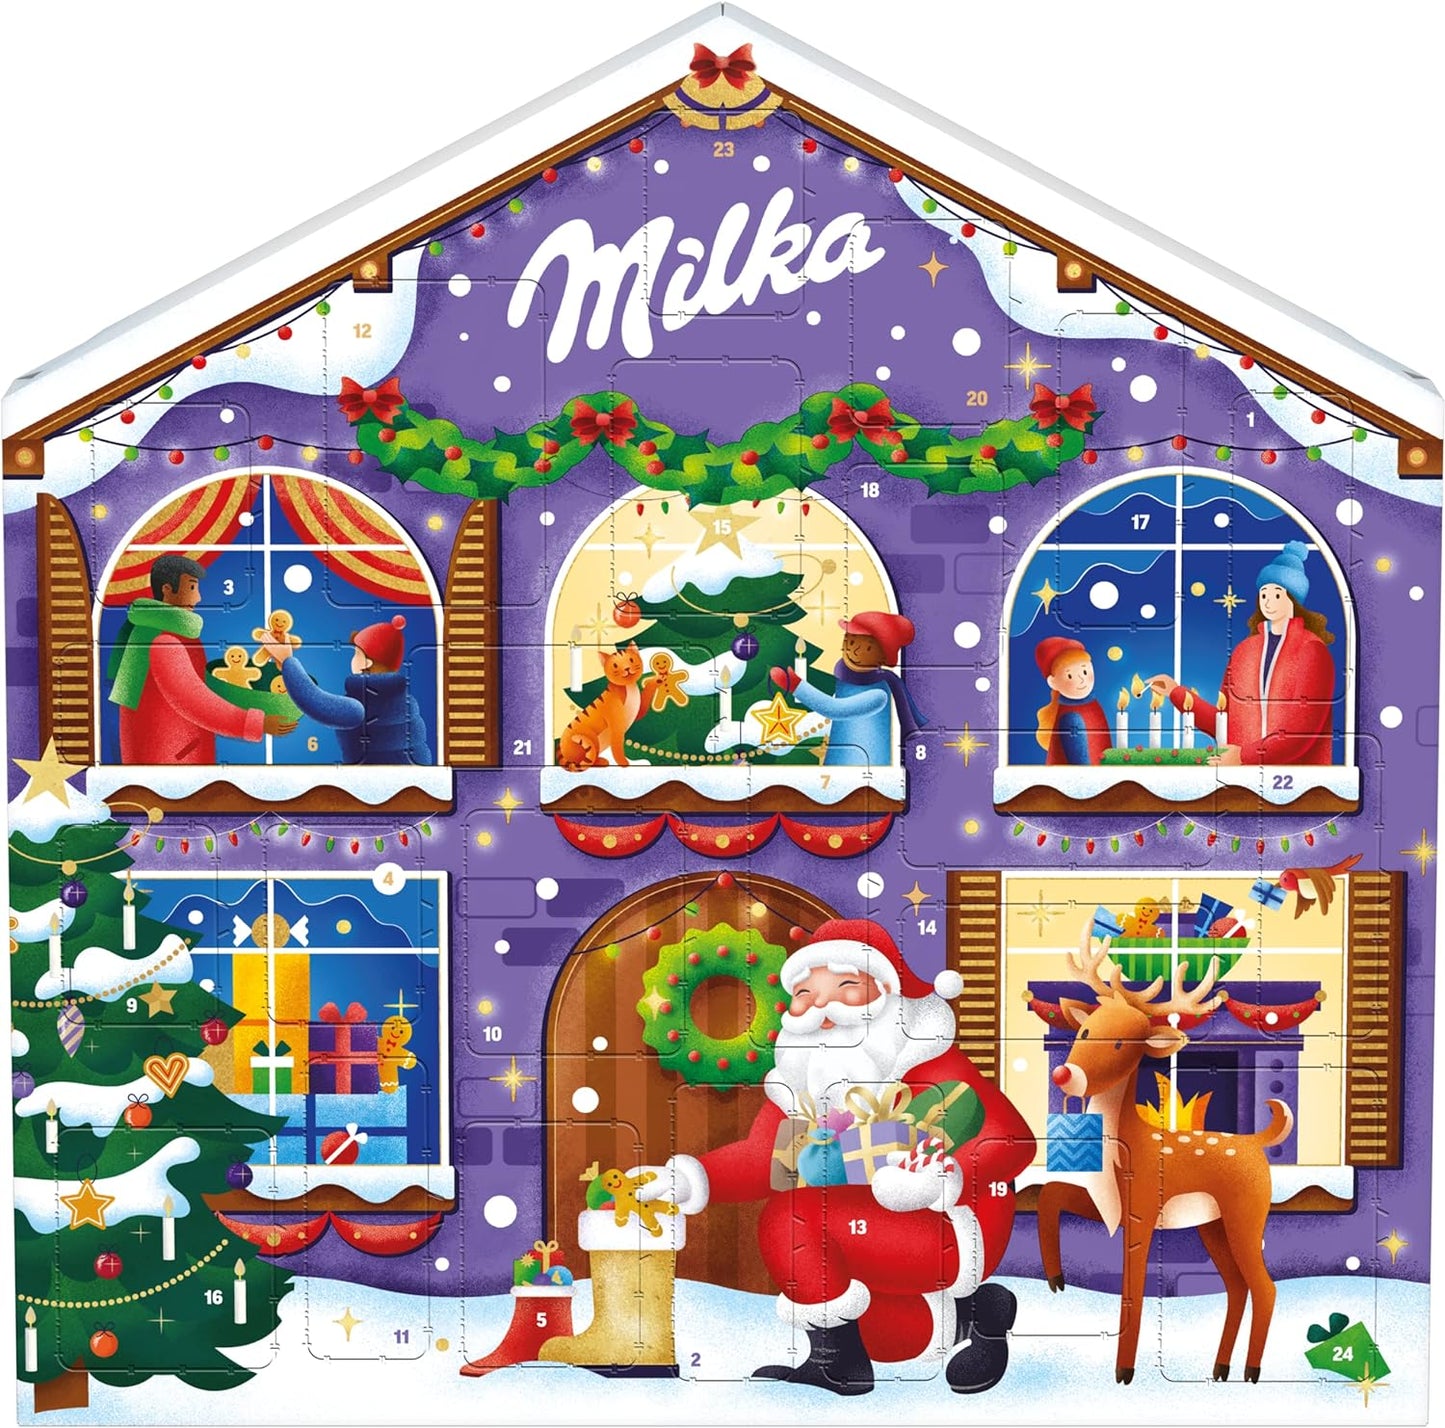 Milka, Calendario dell'Avvento di Natale con Deliziosi Cioccolatini al Latte Milka, 100% Latte Alpino, Cacao Sostenibile, 204g